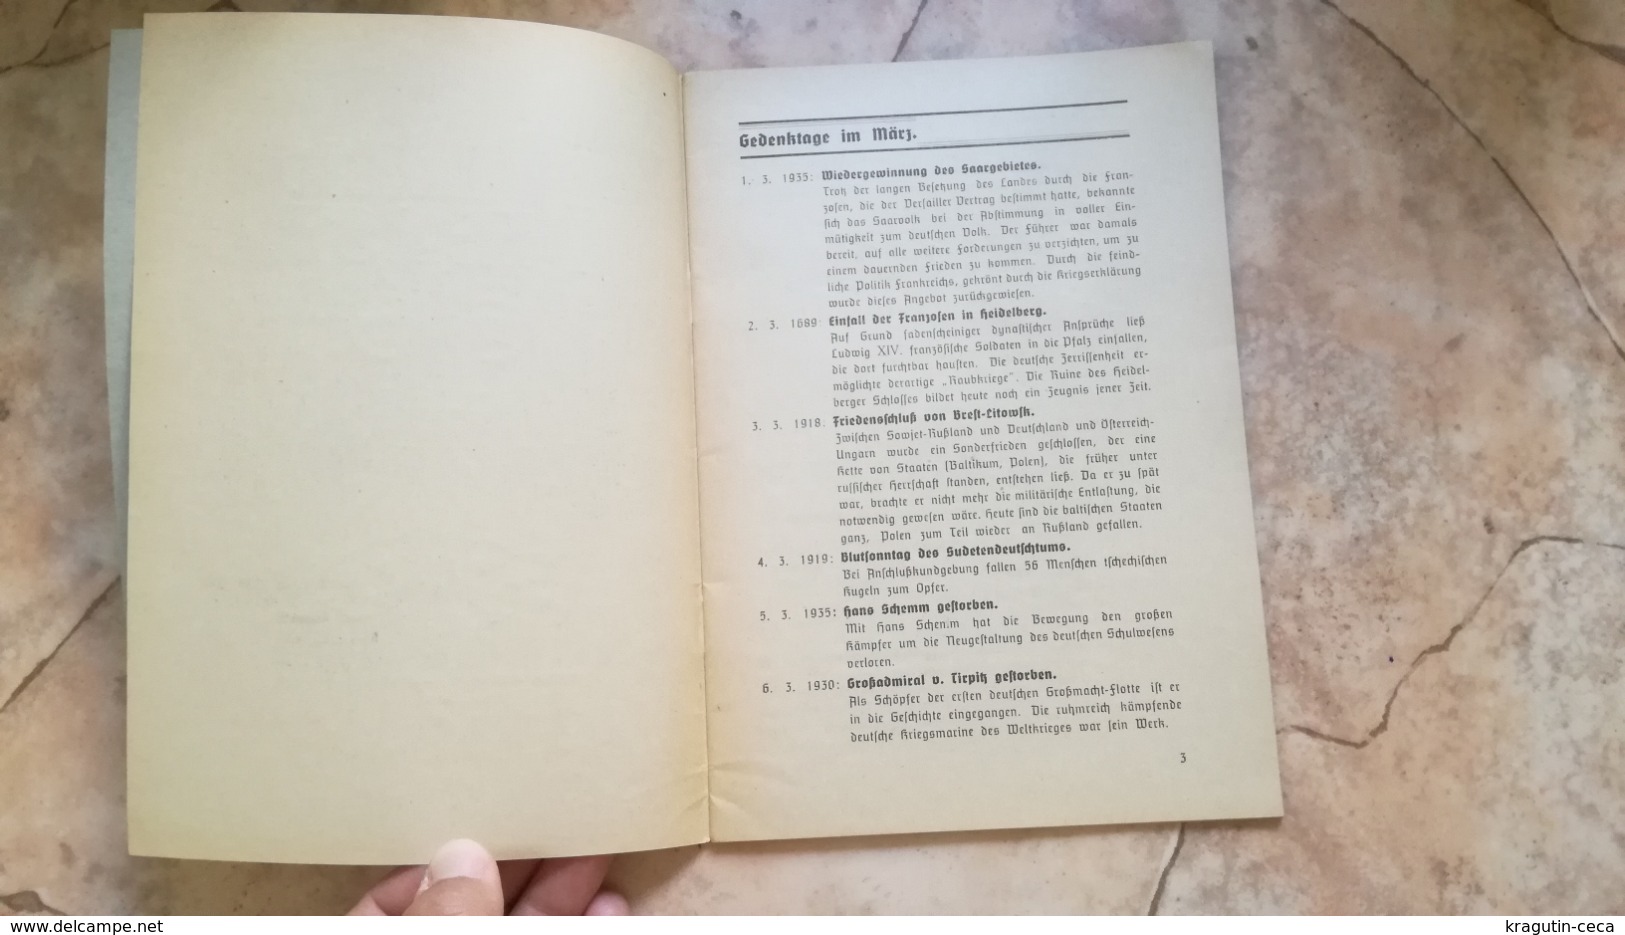 1941 FUHRER DIENST FÜHRER GERMANY GERMAN WEHRMACHT BOOKLET GUIDE SERVICES CALENDAR PROGRAM BOOK BUCHE GEBIET WIEN 27 - Militär & Polizei